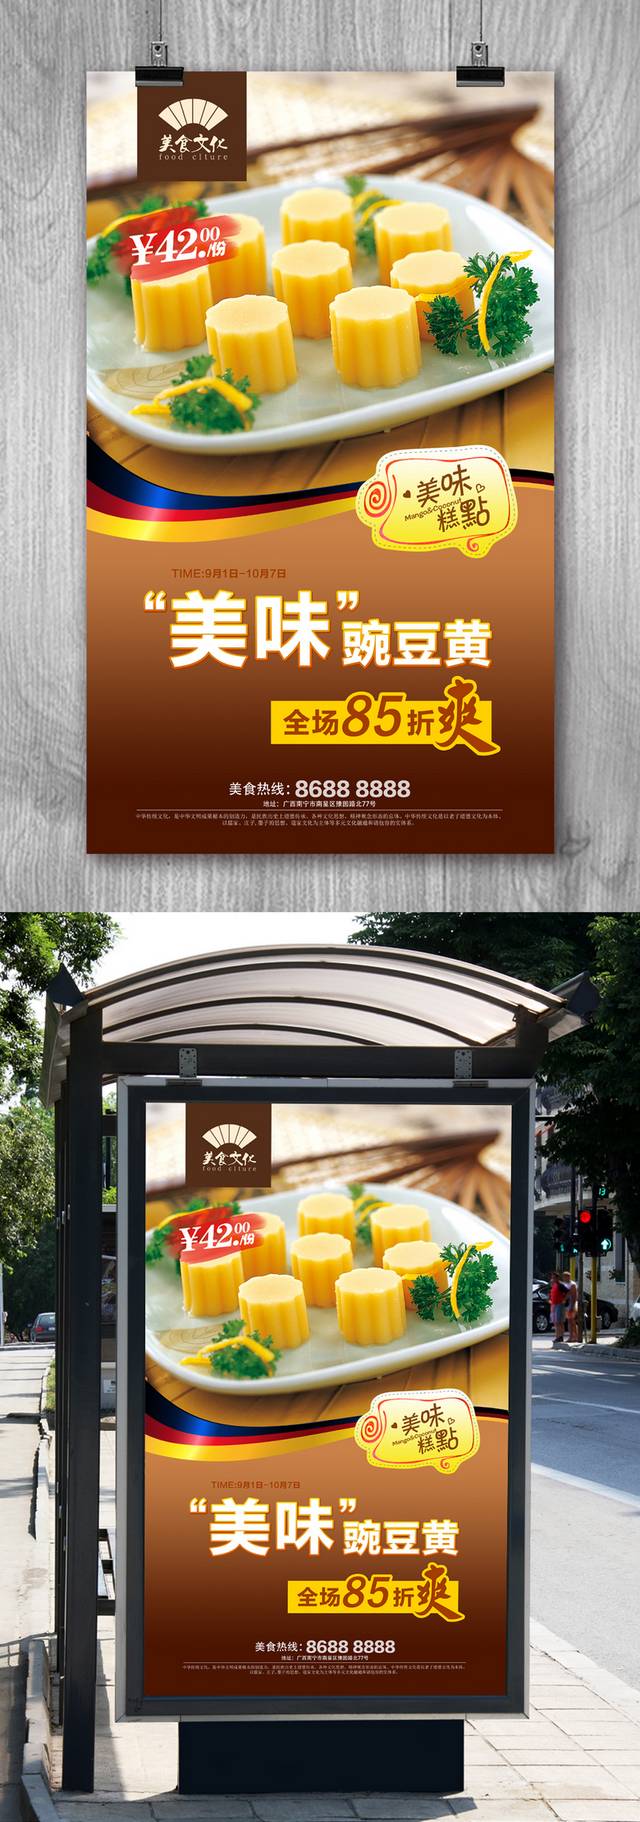 精品糕点铺豌豆黄宣传海报设计